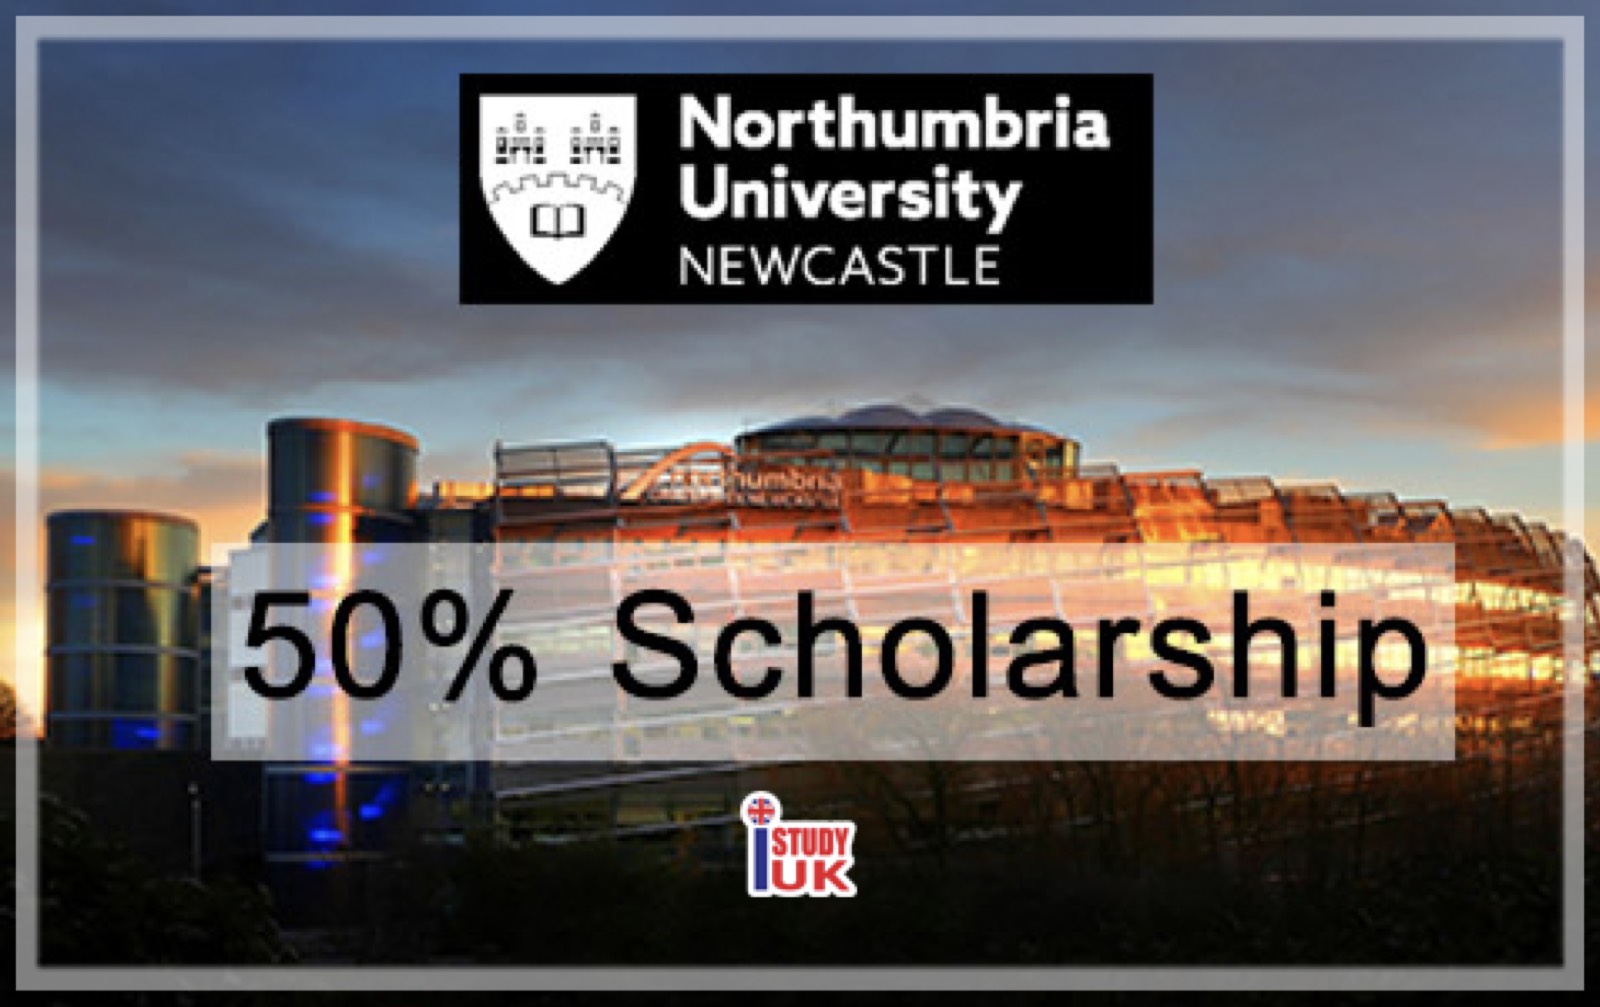 เรียนต่ออังกฤษ ณ Northumbria University - Newcastle โดย เอเจนซี่ I STUDY UK